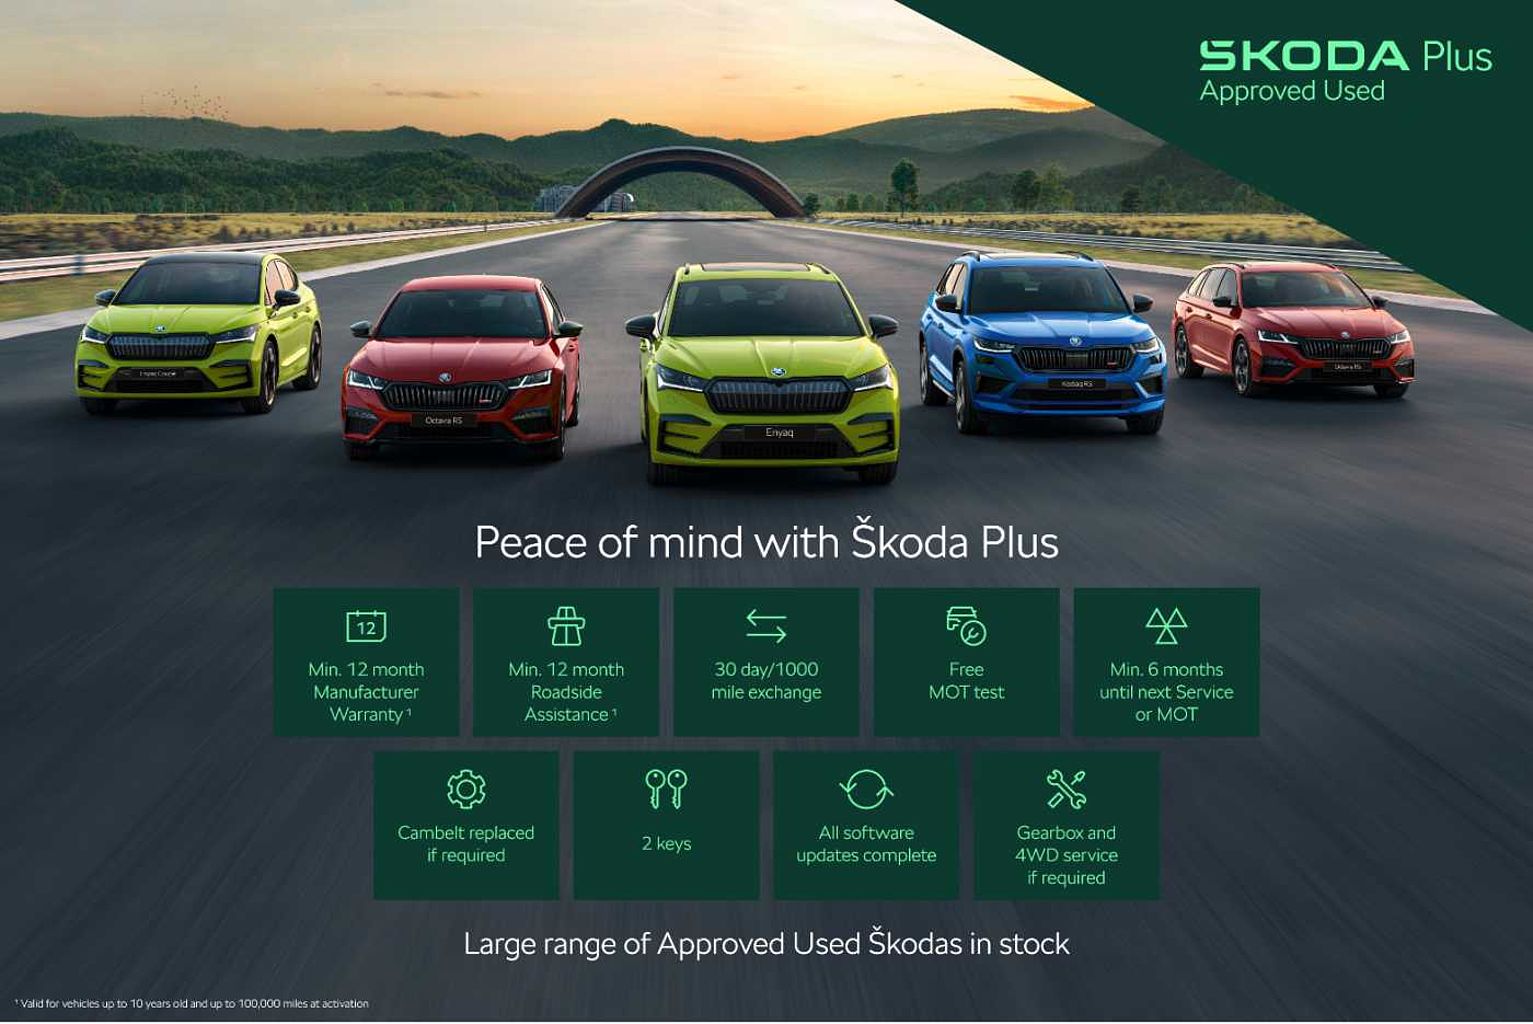 SKODA Kodiaq 2.0 TDI (150ps) Sportline (7 Seats) 4x4 Auto/DSG SUV